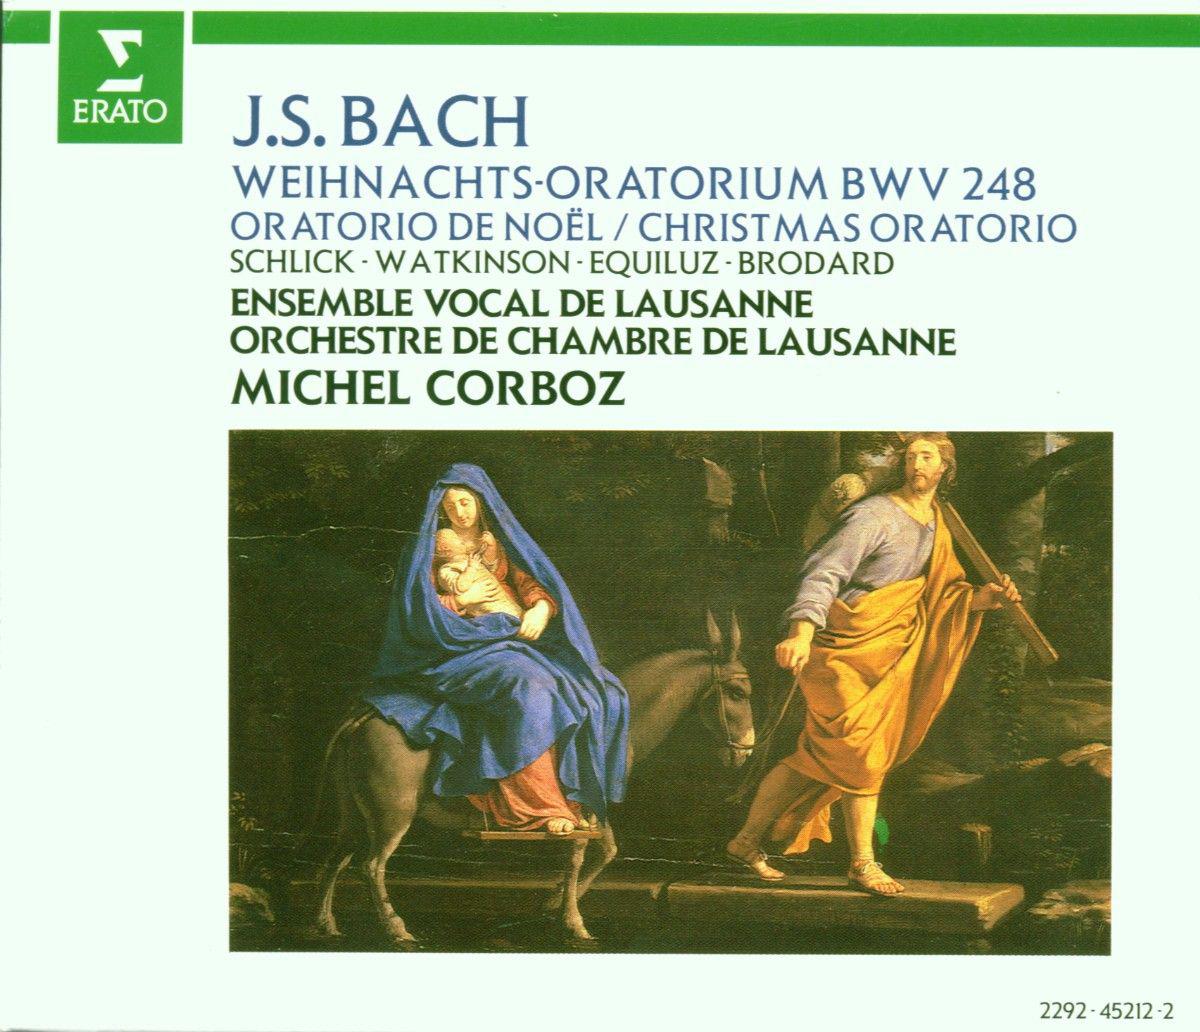 Weihnachtsoratorium, BWV 248, Pt. 3:No. 29, Duett. "Herr, dein Mitleid, dein Erbarmen"